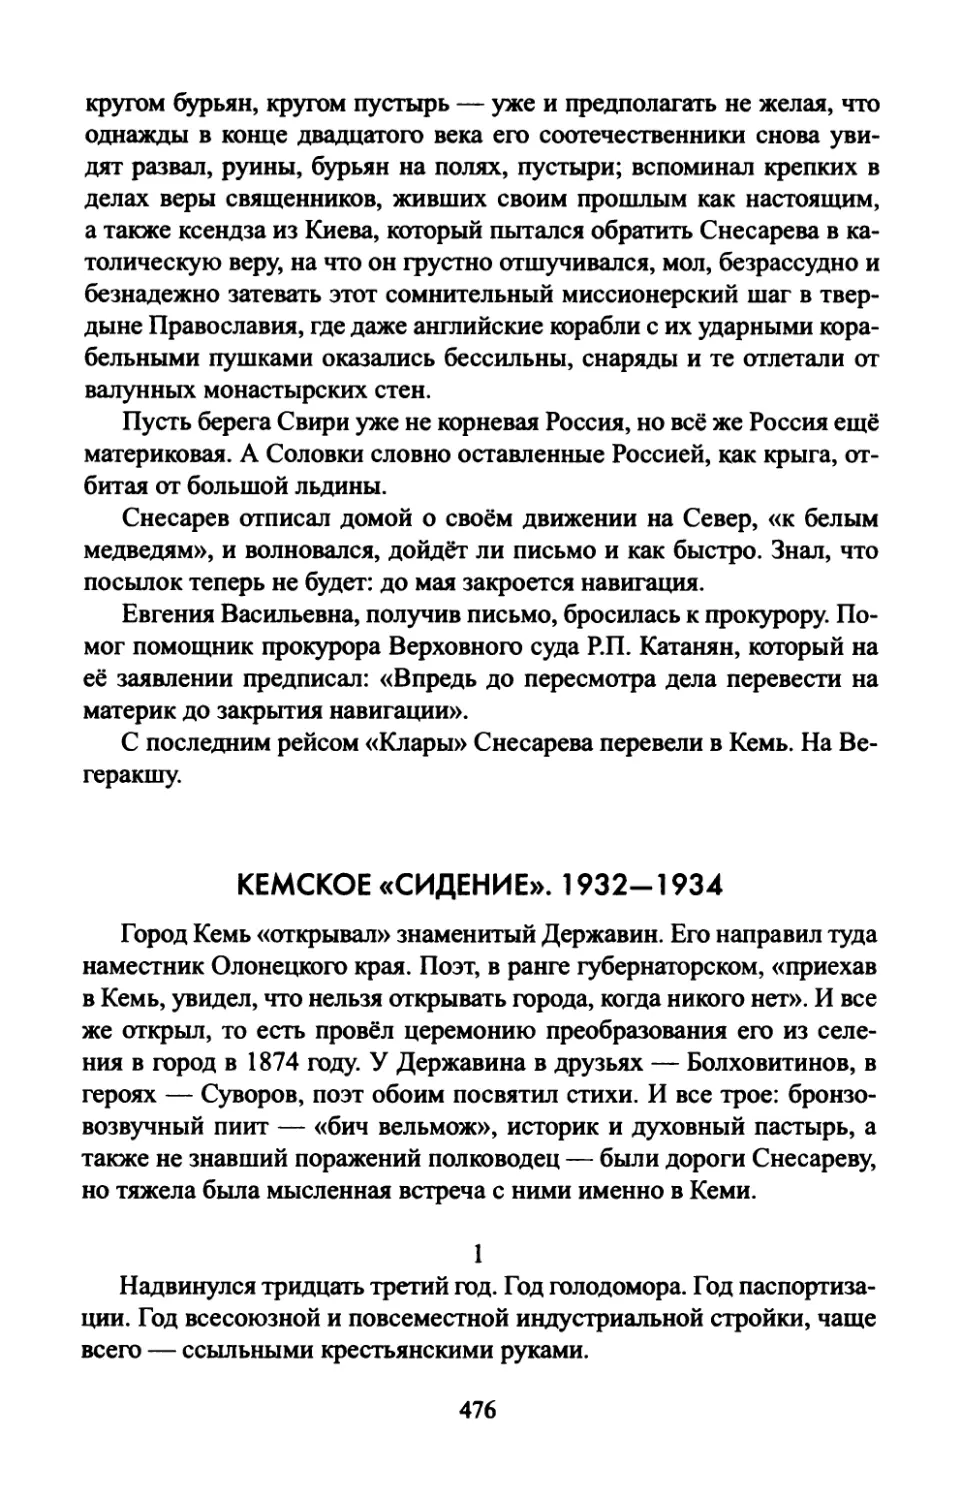 КЕМСКОЕ  «СИДЕНИЕ».  1932—1934